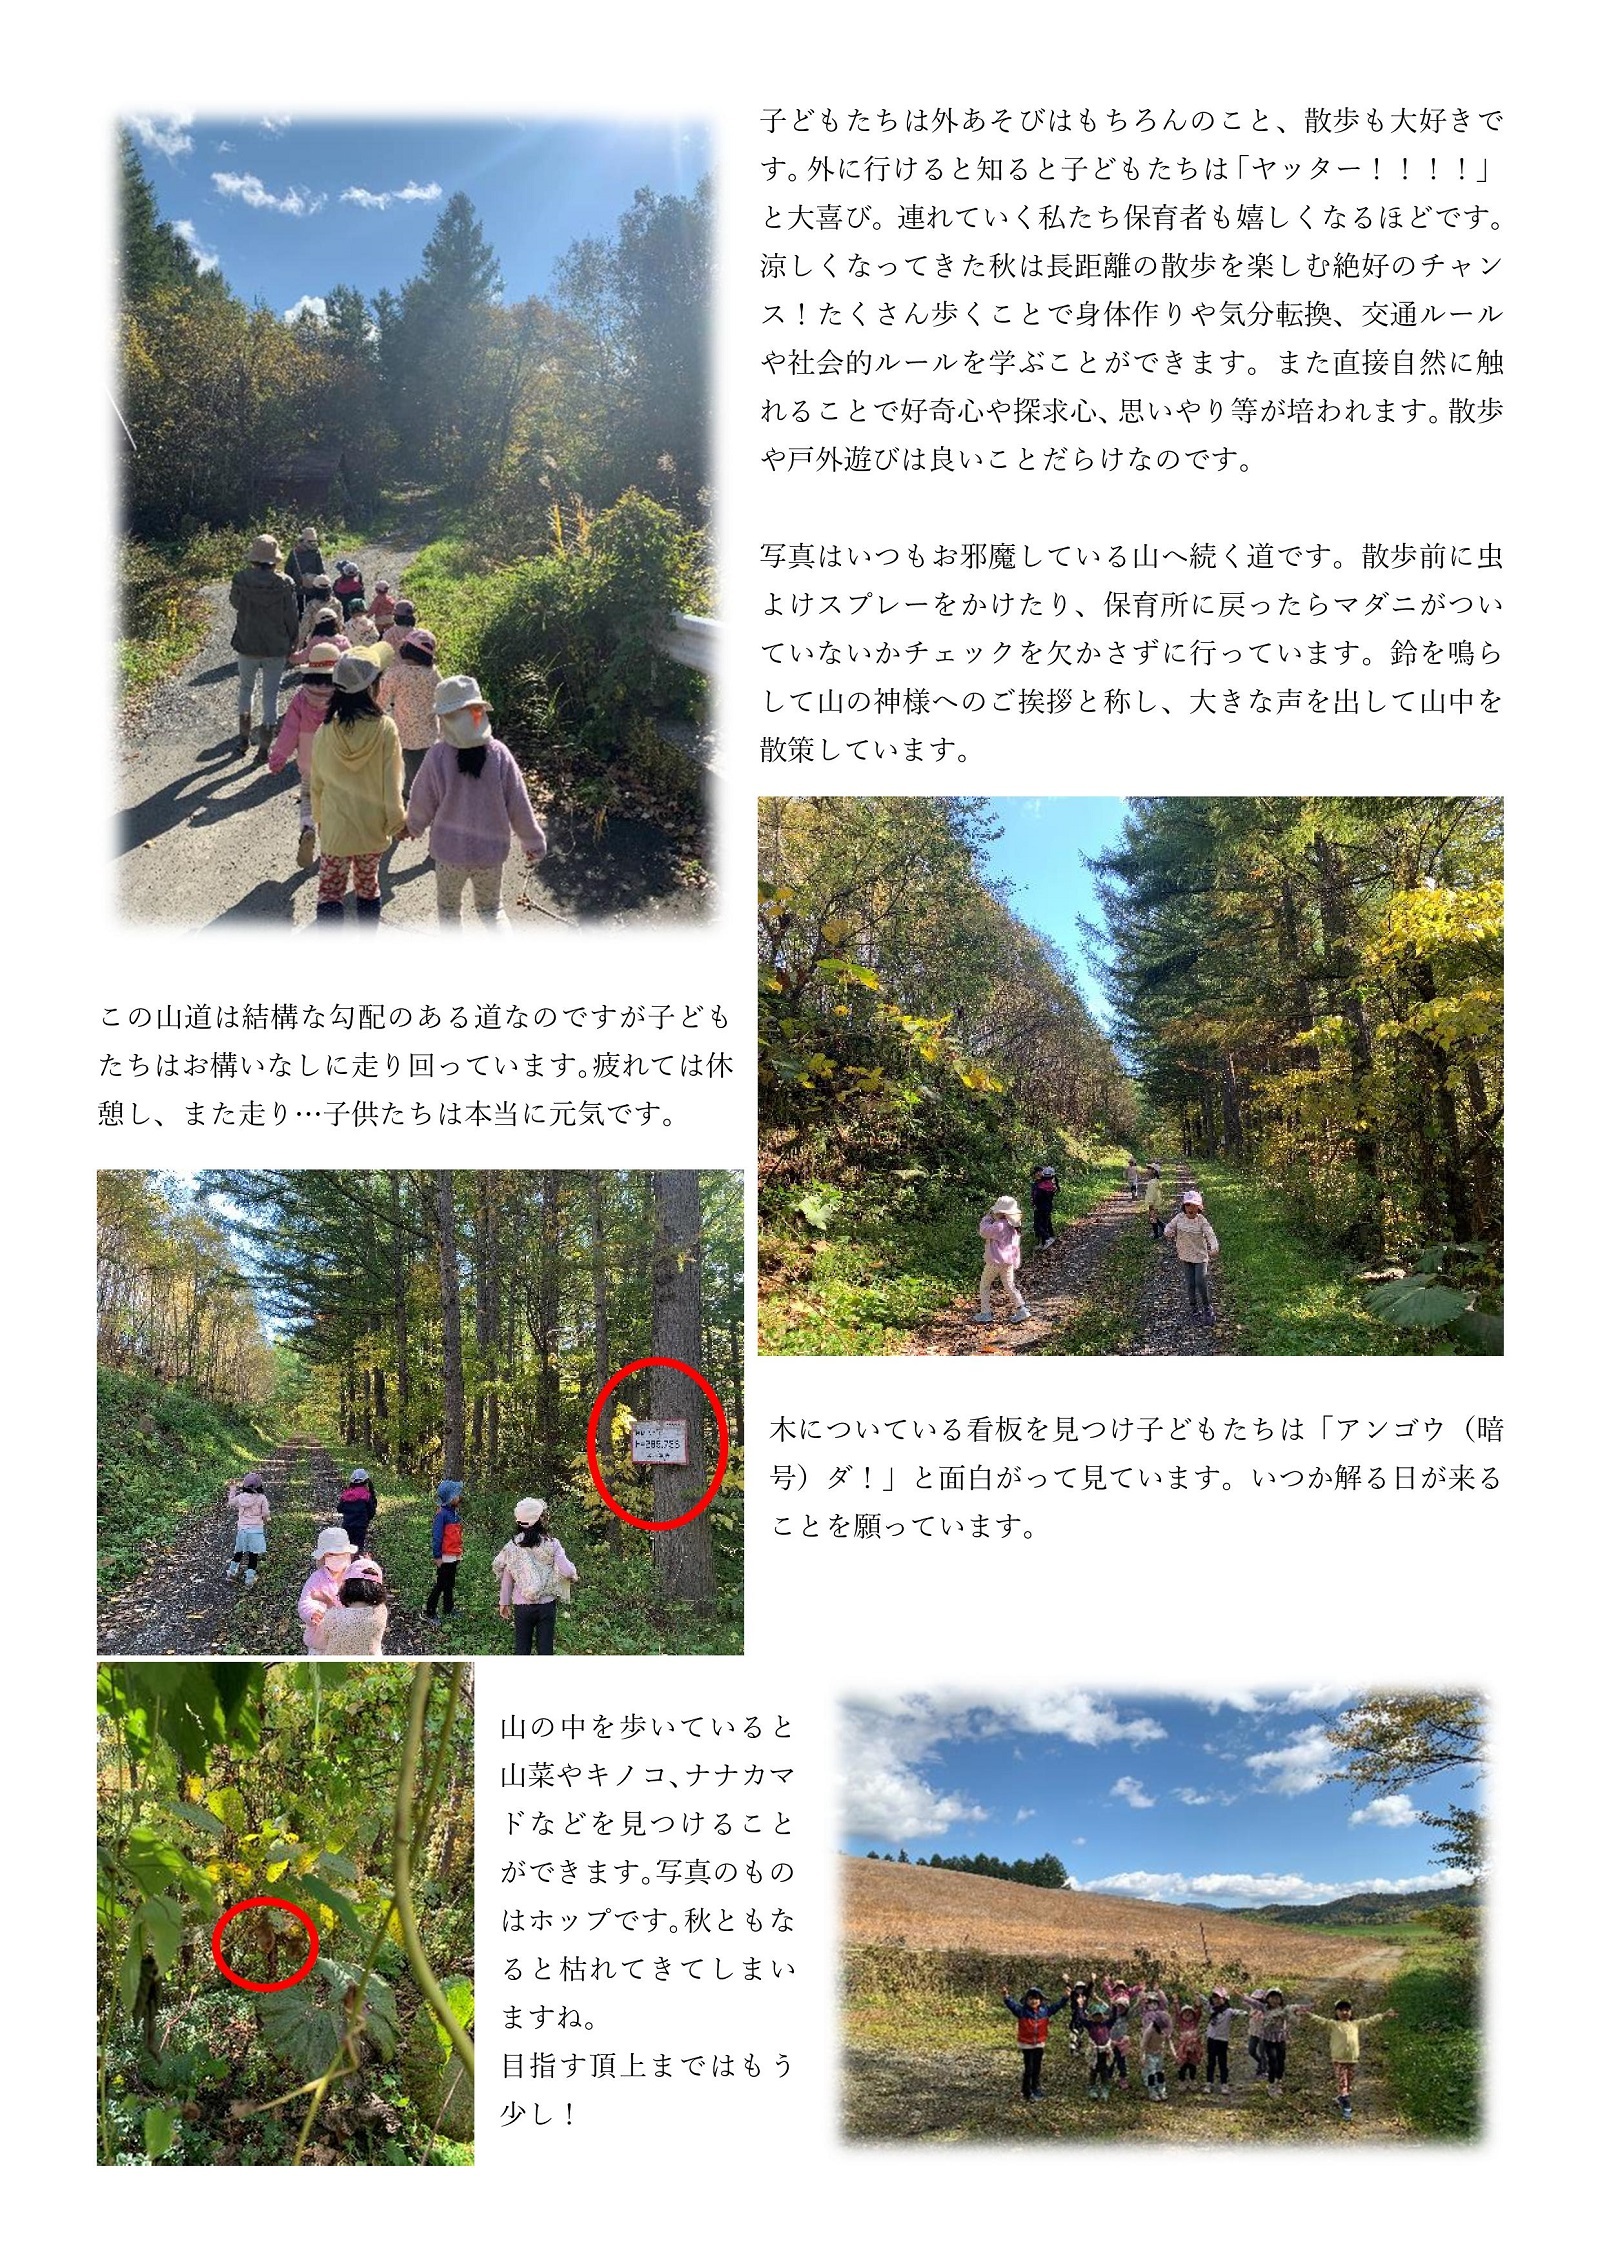 東山保育所通信 山に生きる2ページ目の画像